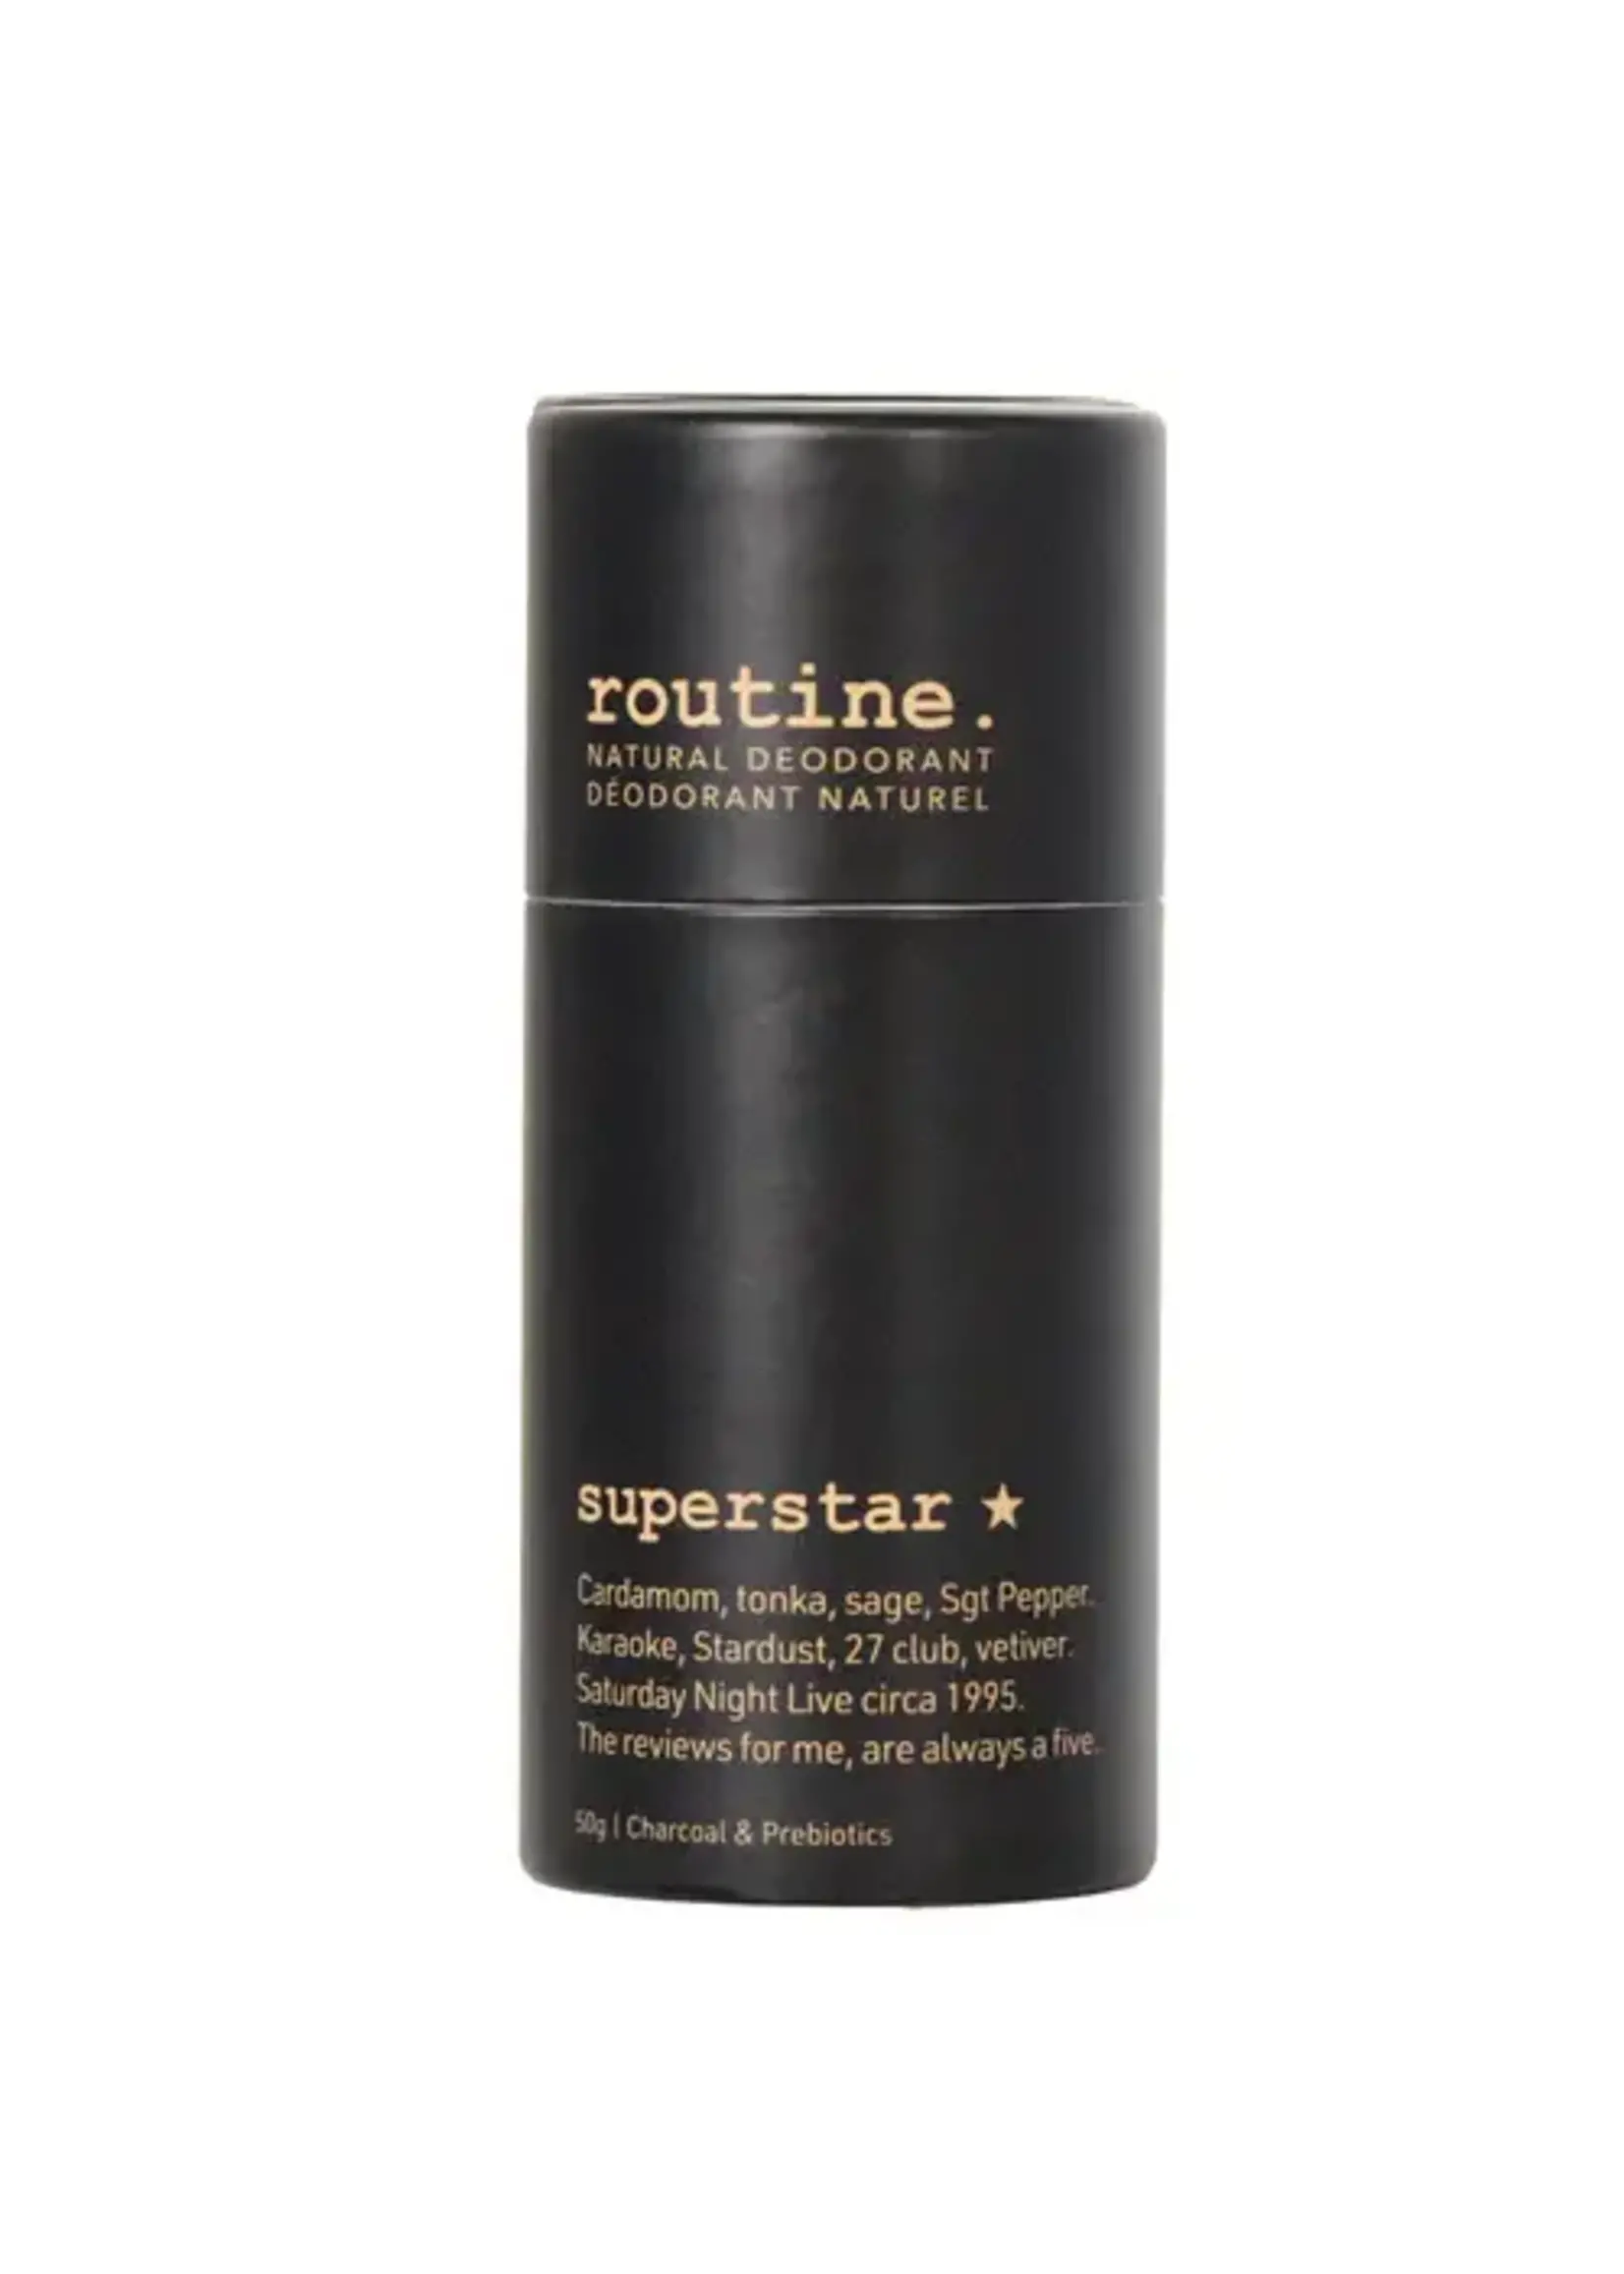 ROUTINE Superstar - 50g Deodorant Stick